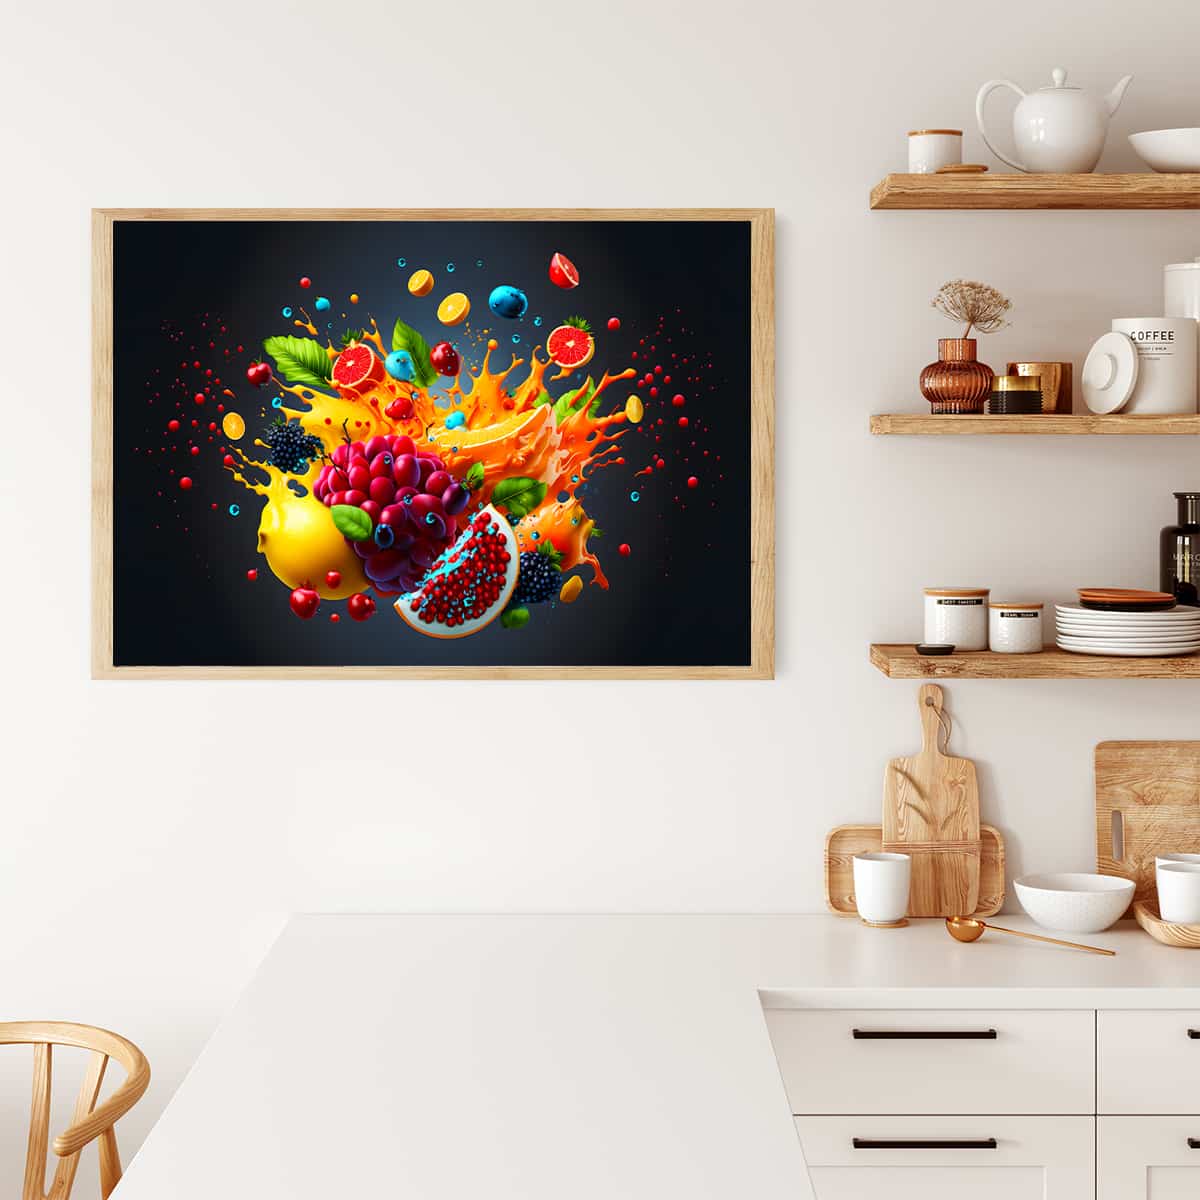 AB Diamond Painting - Fruchtexplosion Bunt - gedruckt in Ultra-HD - AB Diamond, Früchte, Horizontal, Küche, Neu eingetroffen